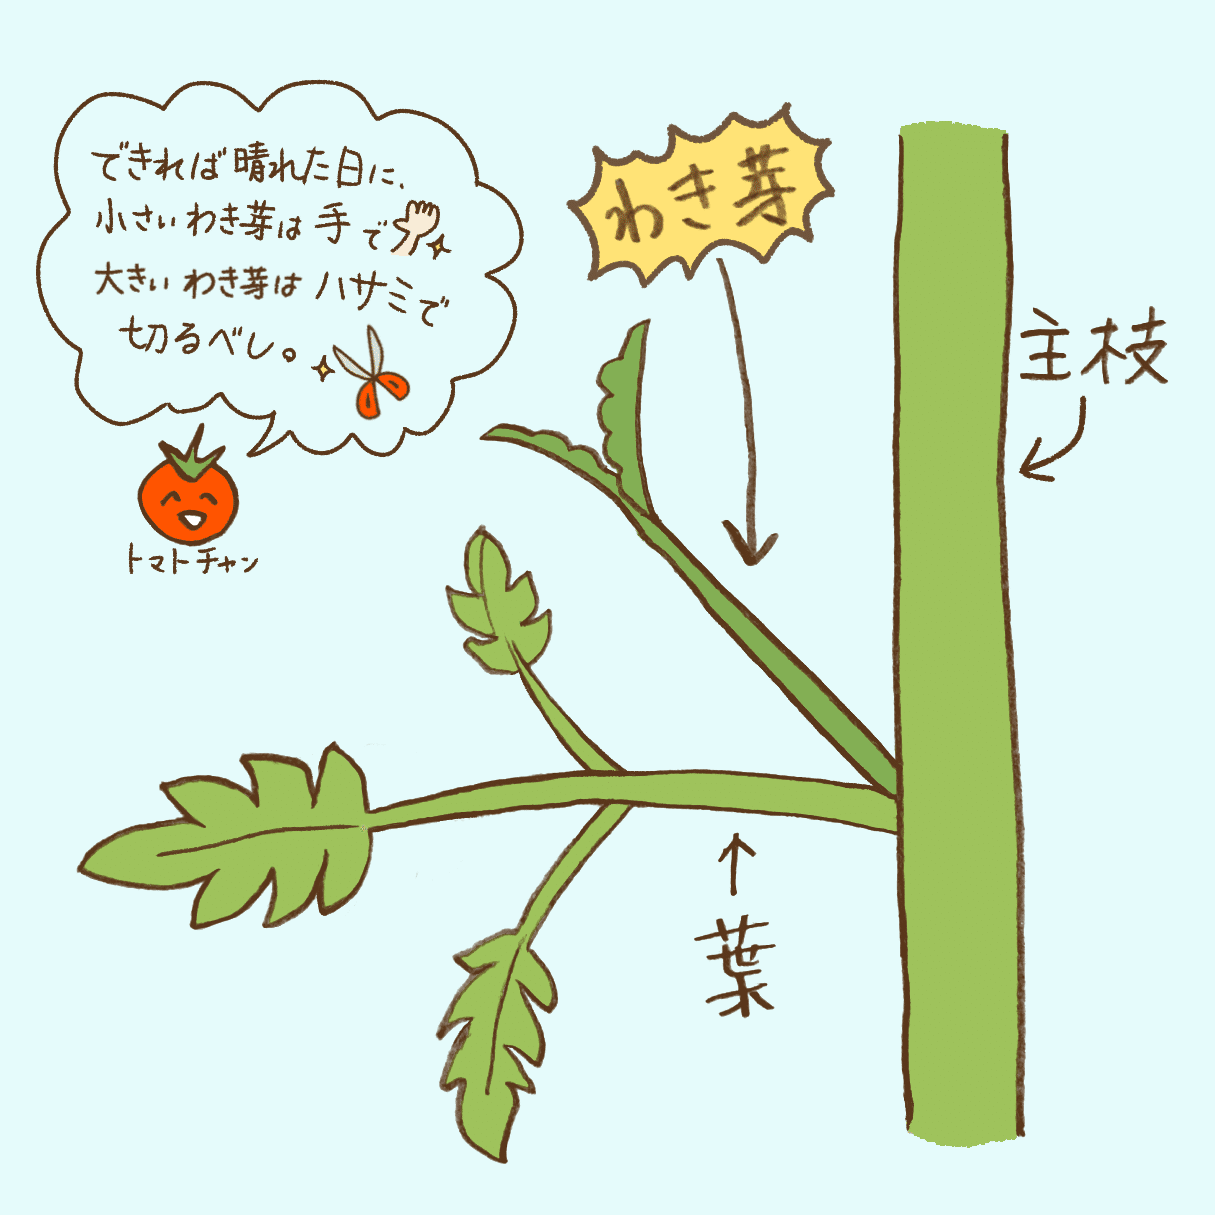 ミニトマトの三本仕立て 花盛りのきゅうりを添えて 玉三郎 Note